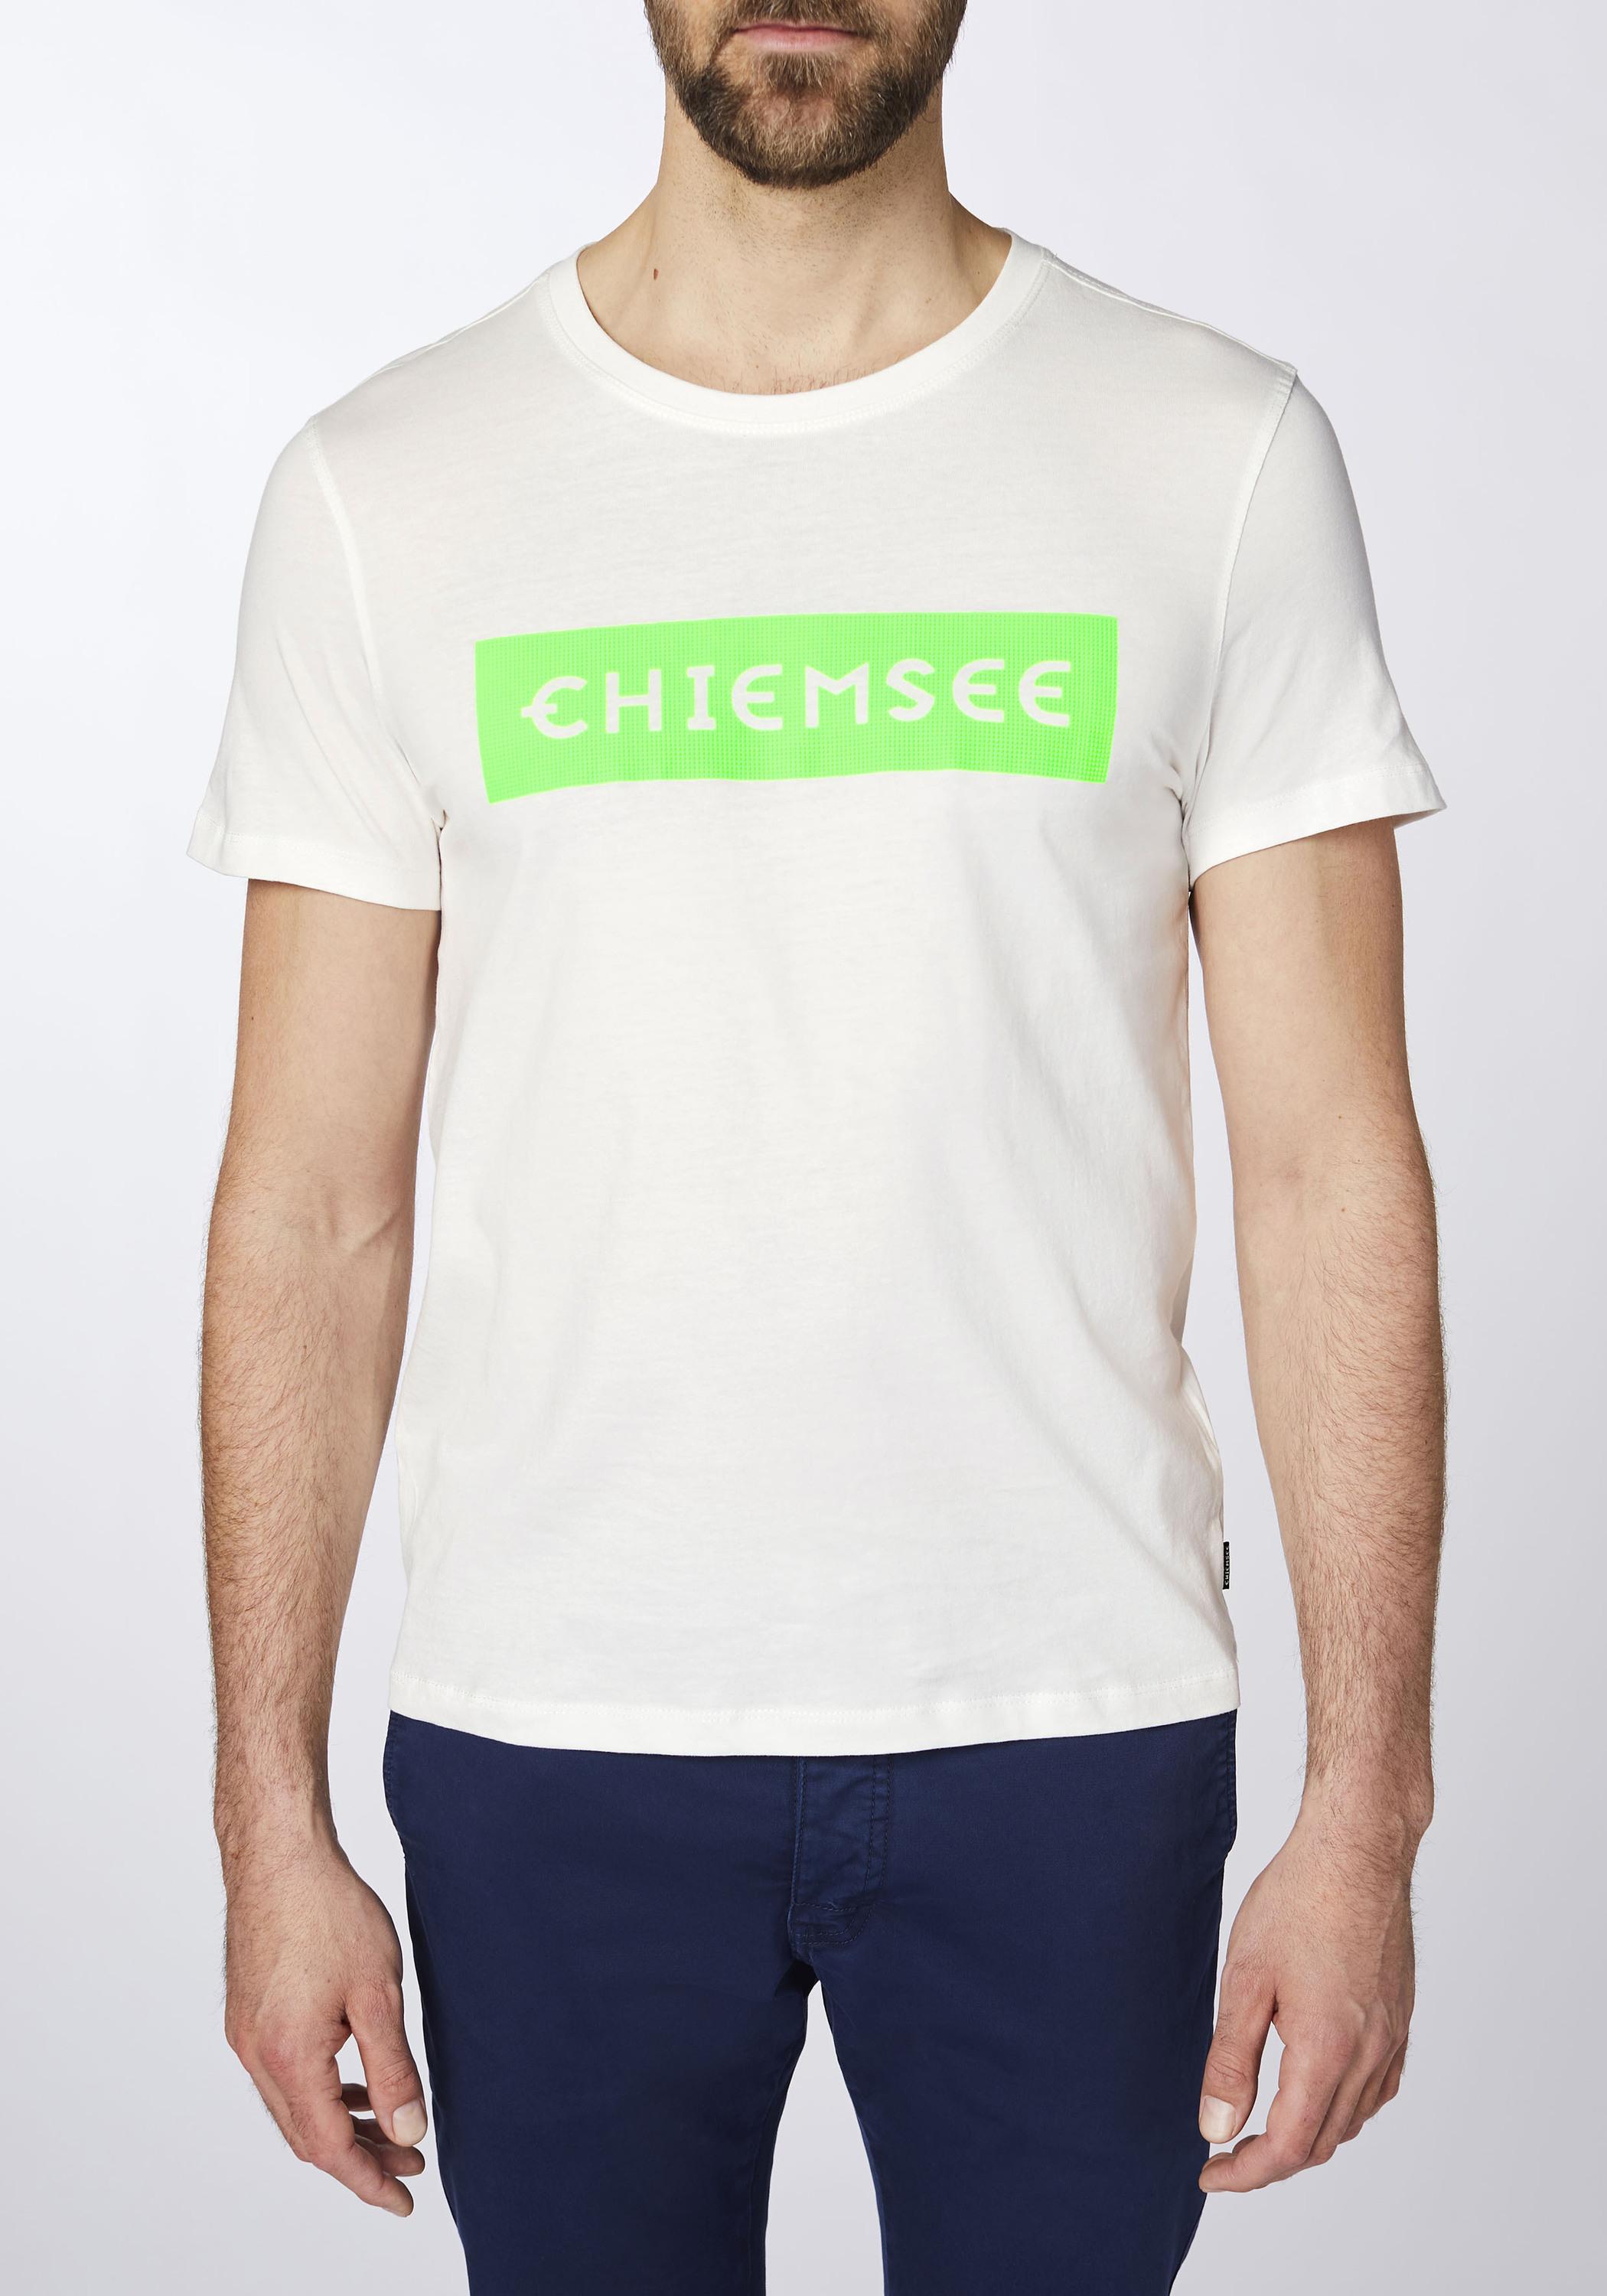 Chiemsee T-Shirt T-Shirt Herren SportScheck von Grn Wht/Md im Shop Dif Online kaufen